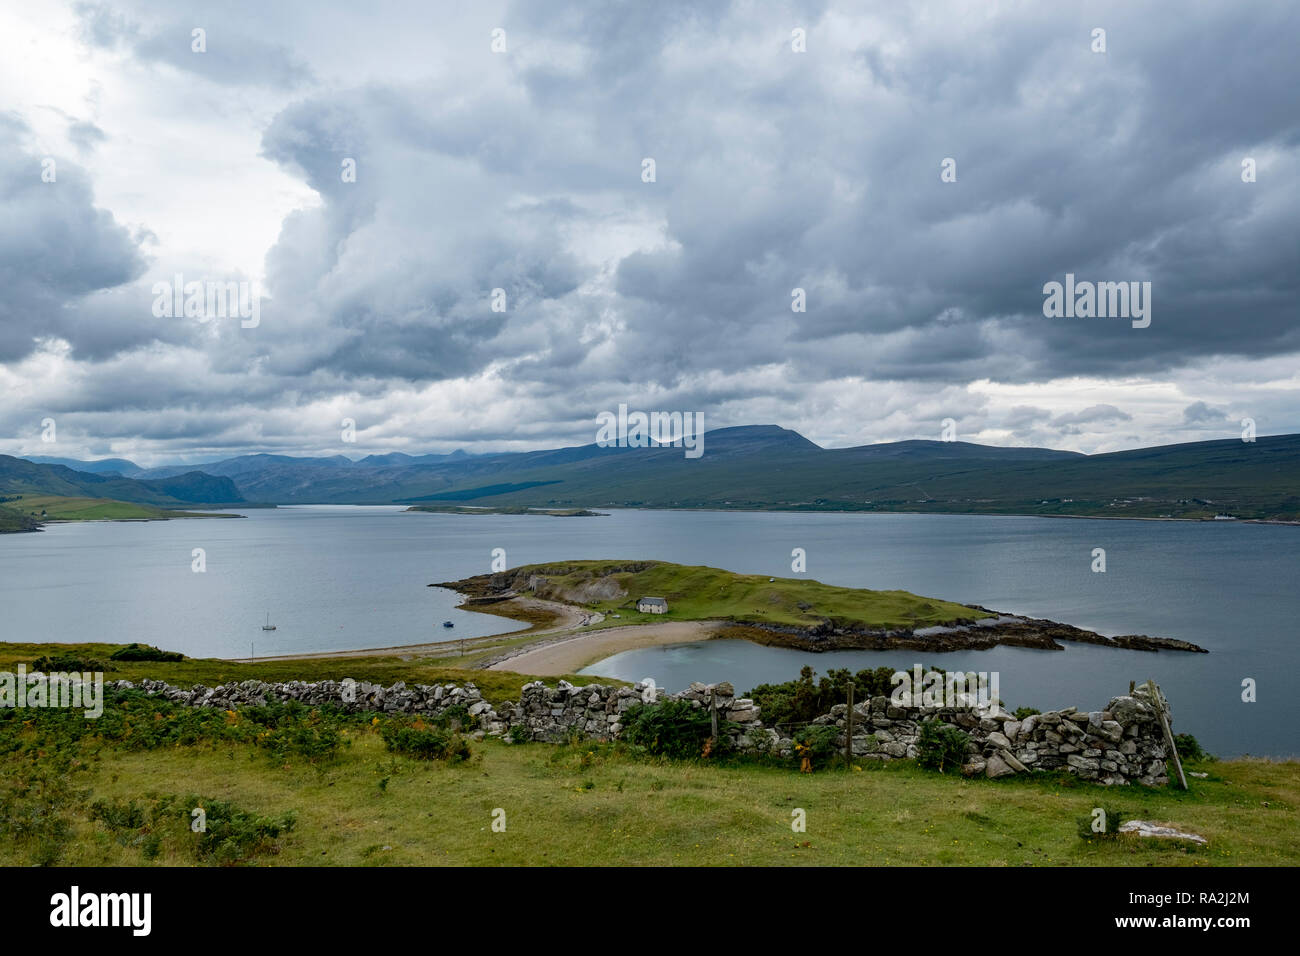 Panoramablick auf Loch Hoffnung, berühmt für Meerforellen, im nördlichen Hochland von Schottland an einem bewölkten Sommertag Stockfoto